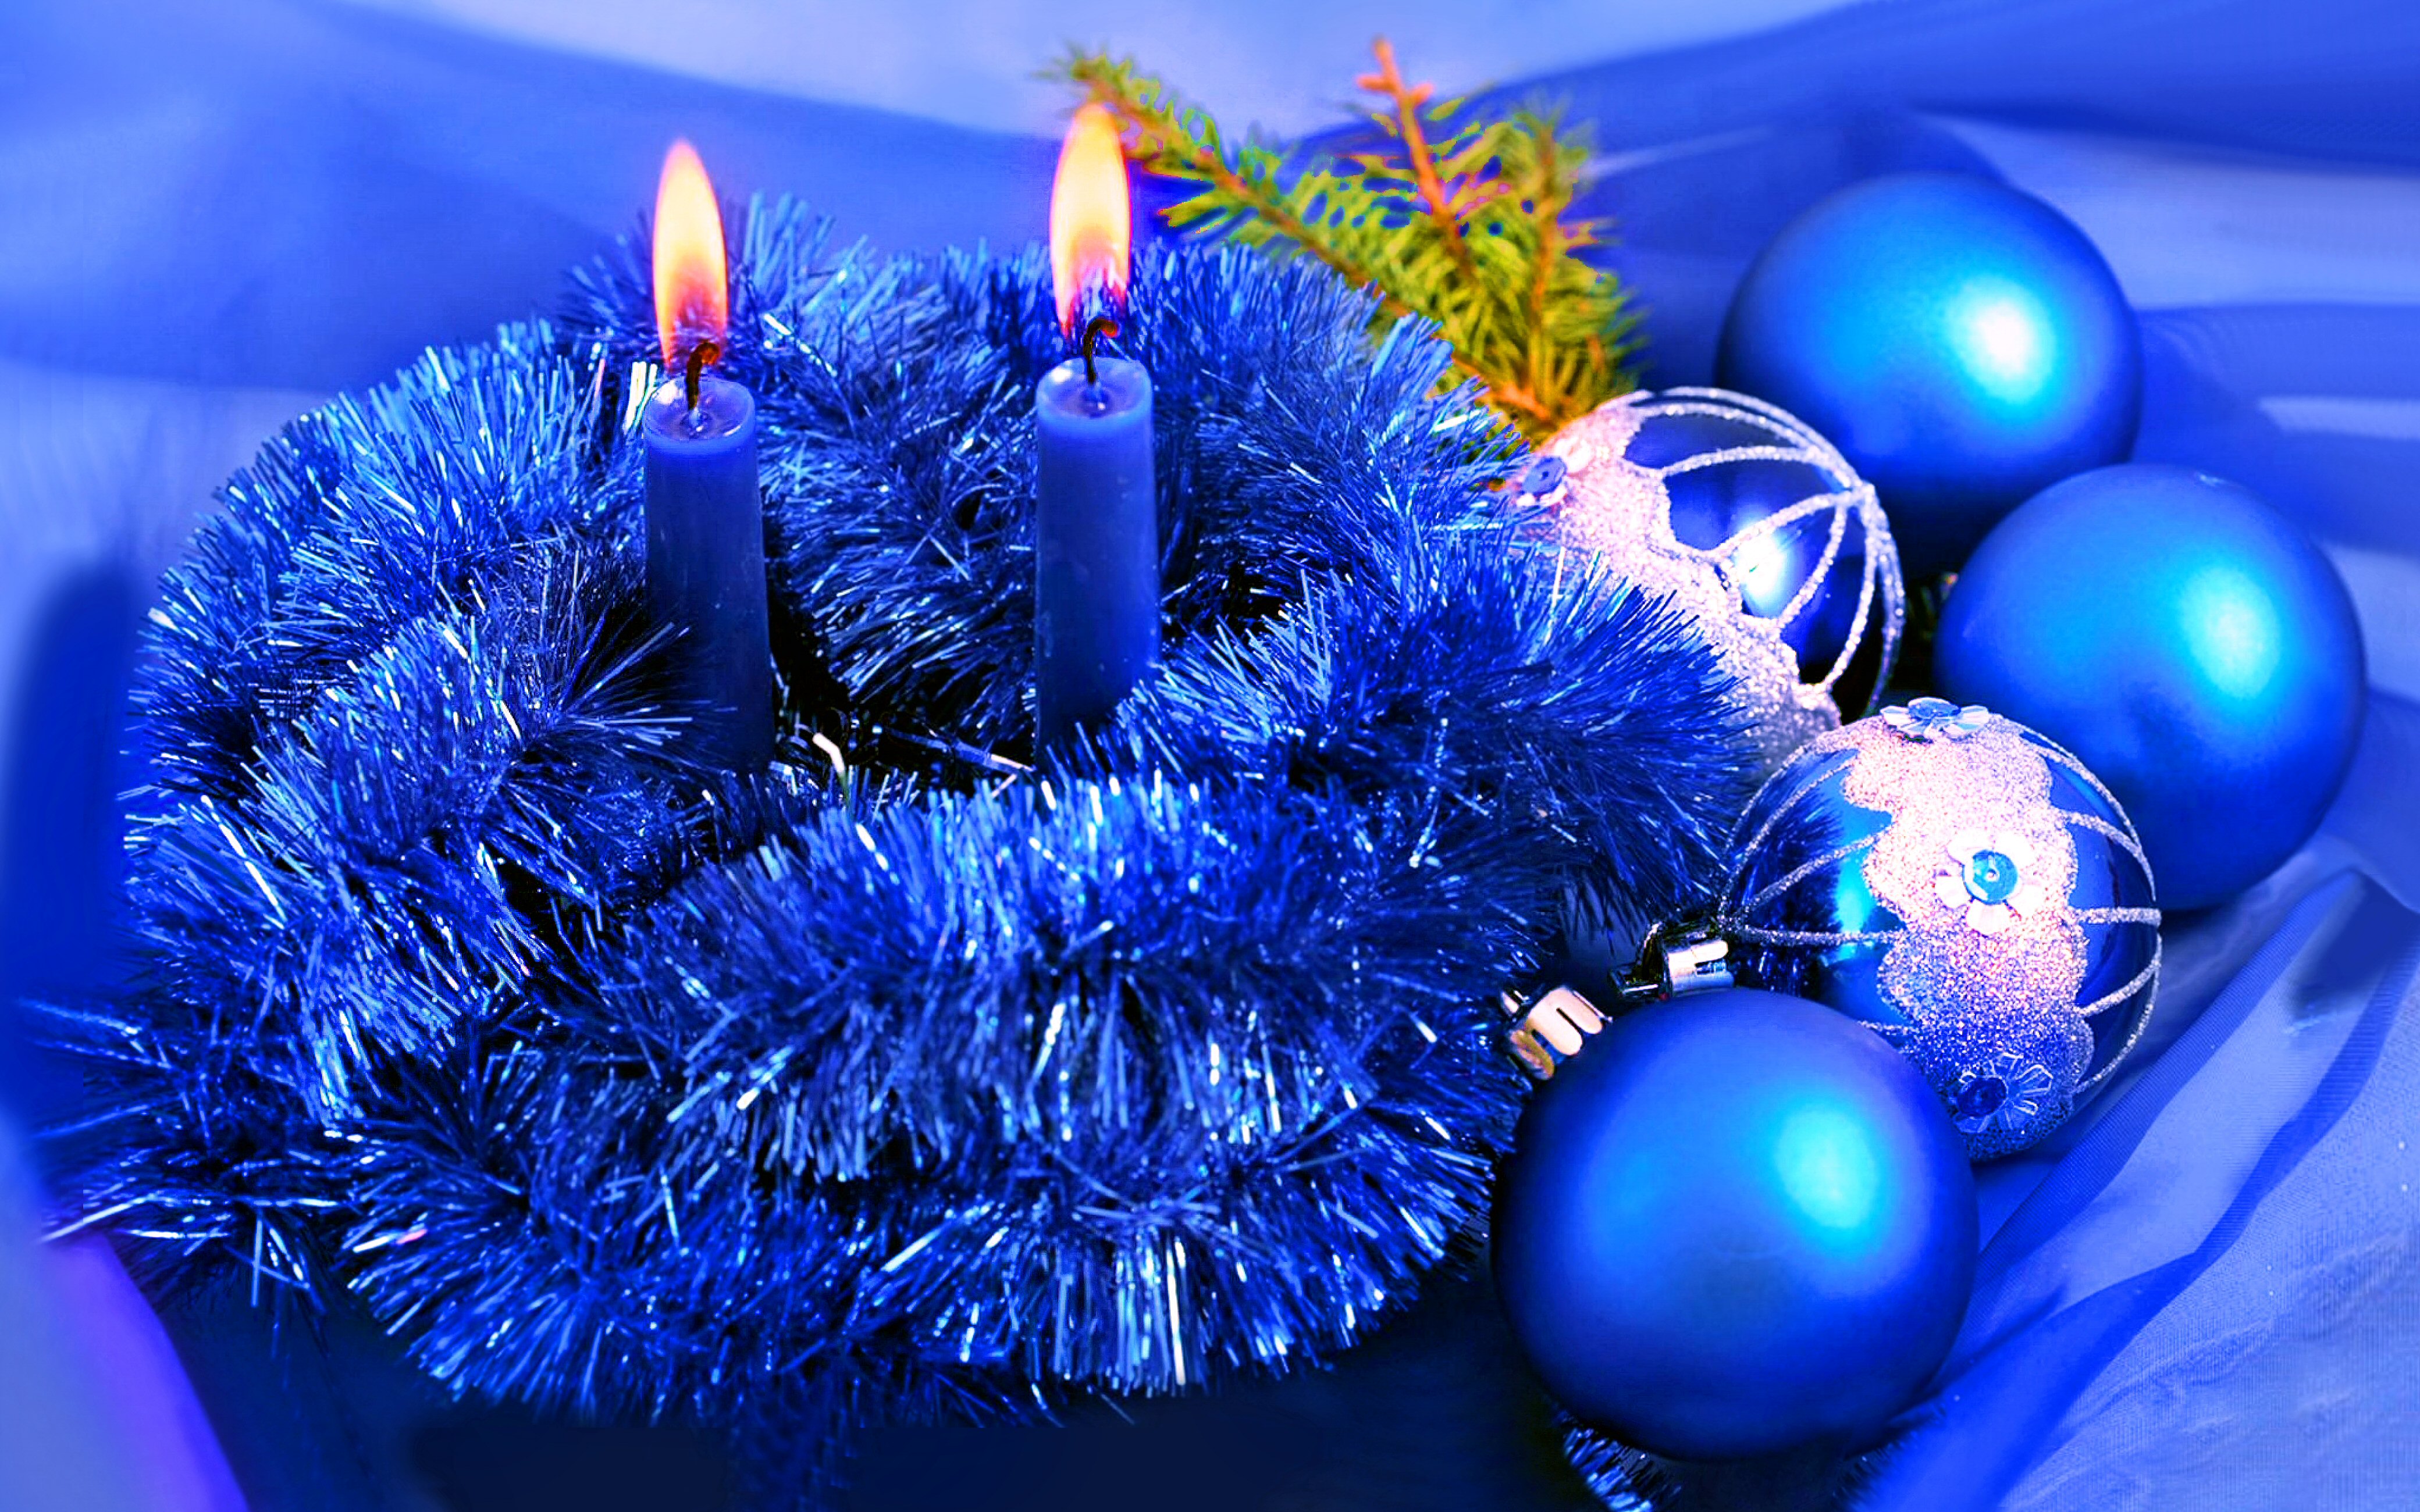 papel pintado noel,azul,decoración navideña,decoración navideña,azul cobalto,navidad